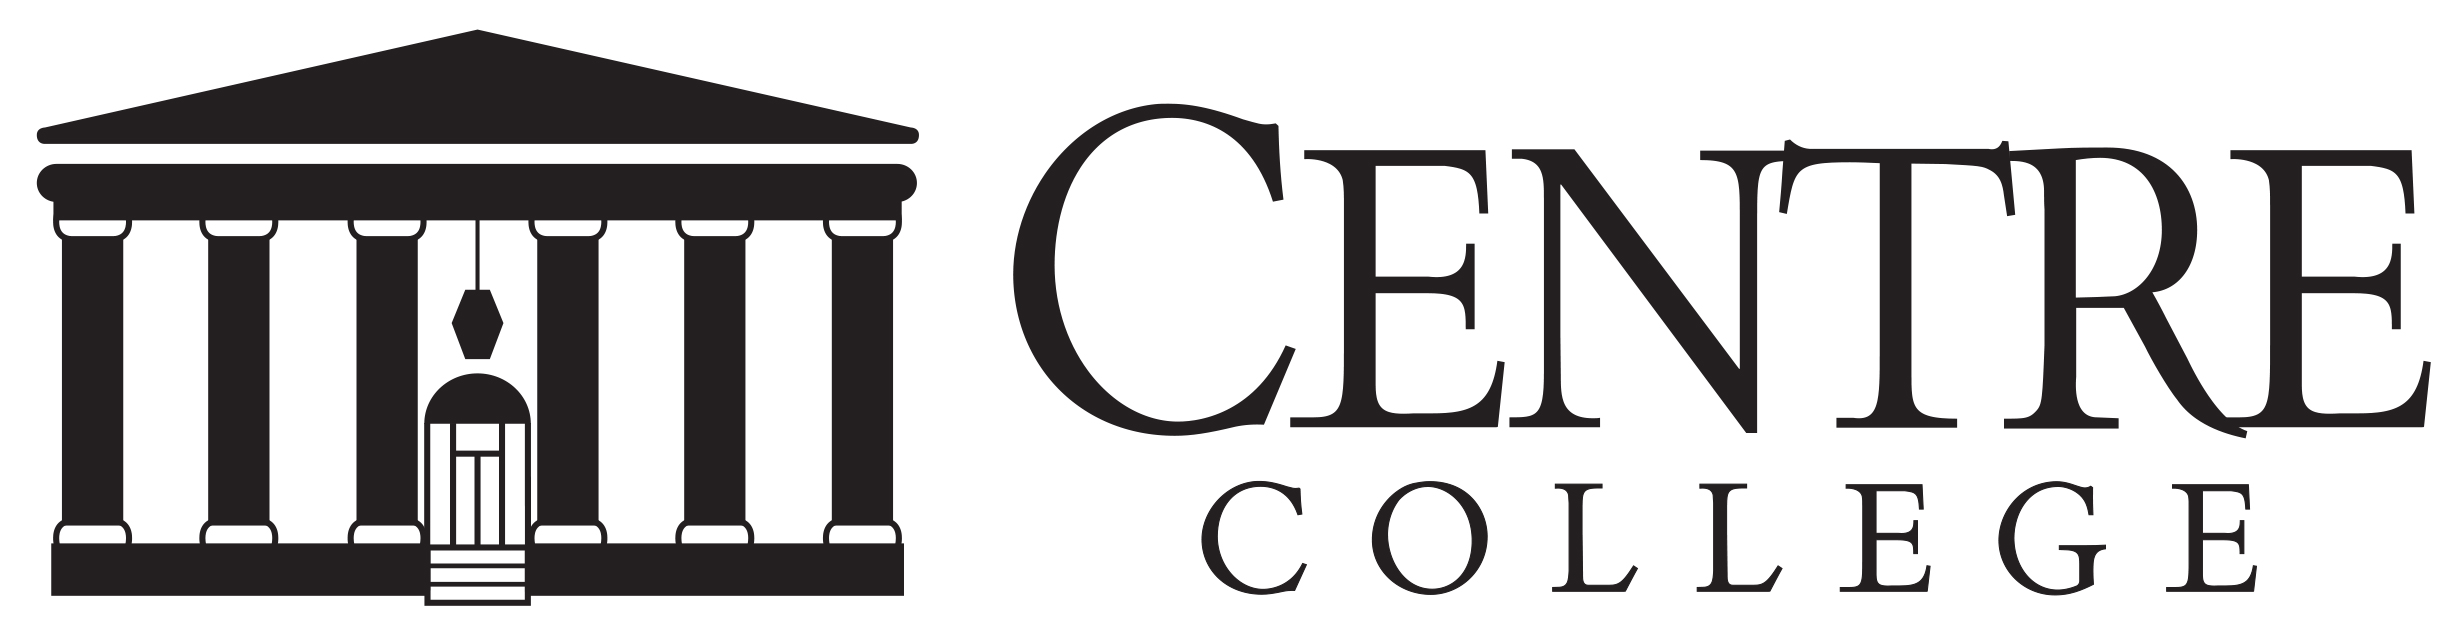 Centre_logo_HORIZONTAL